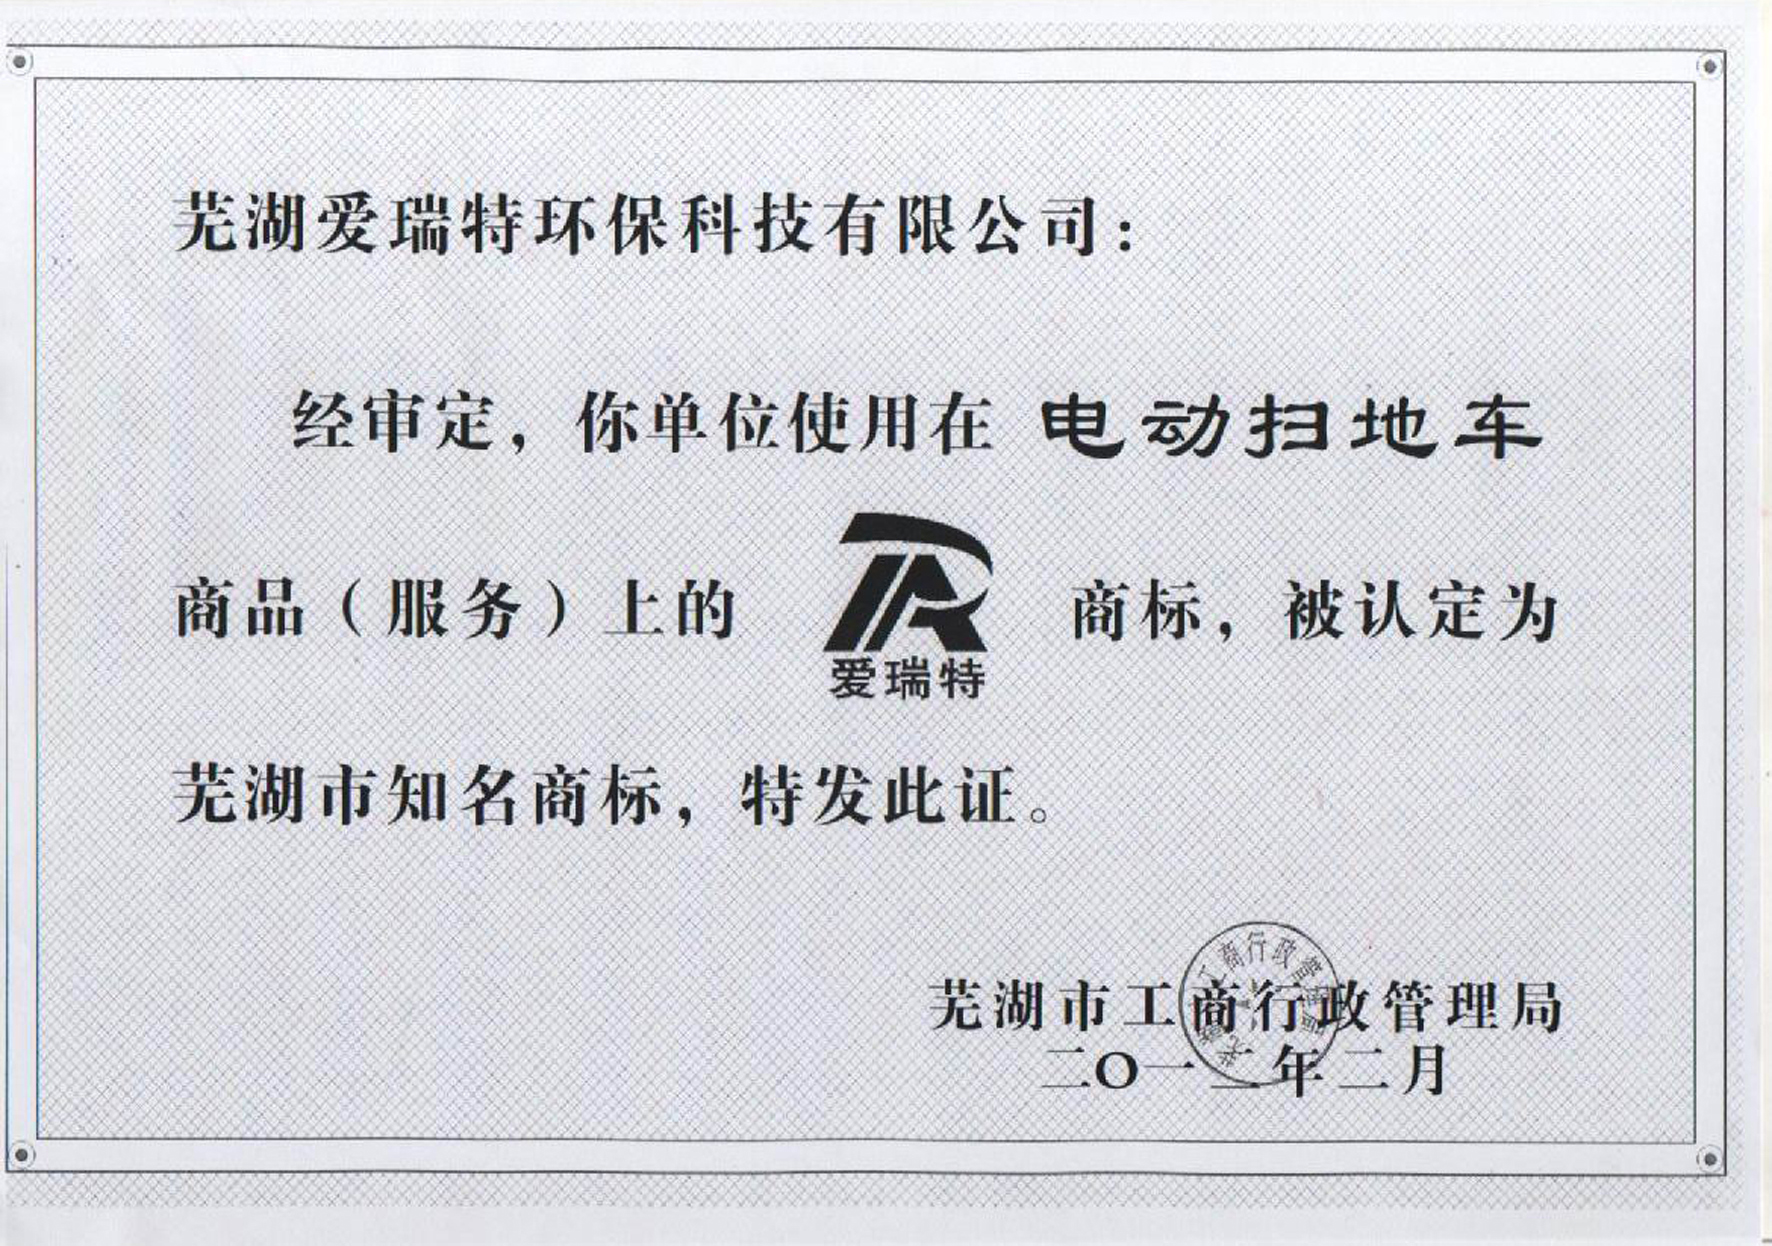 热烈祝贺公司“爱瑞特”商标被认定为芜湖市知名商标